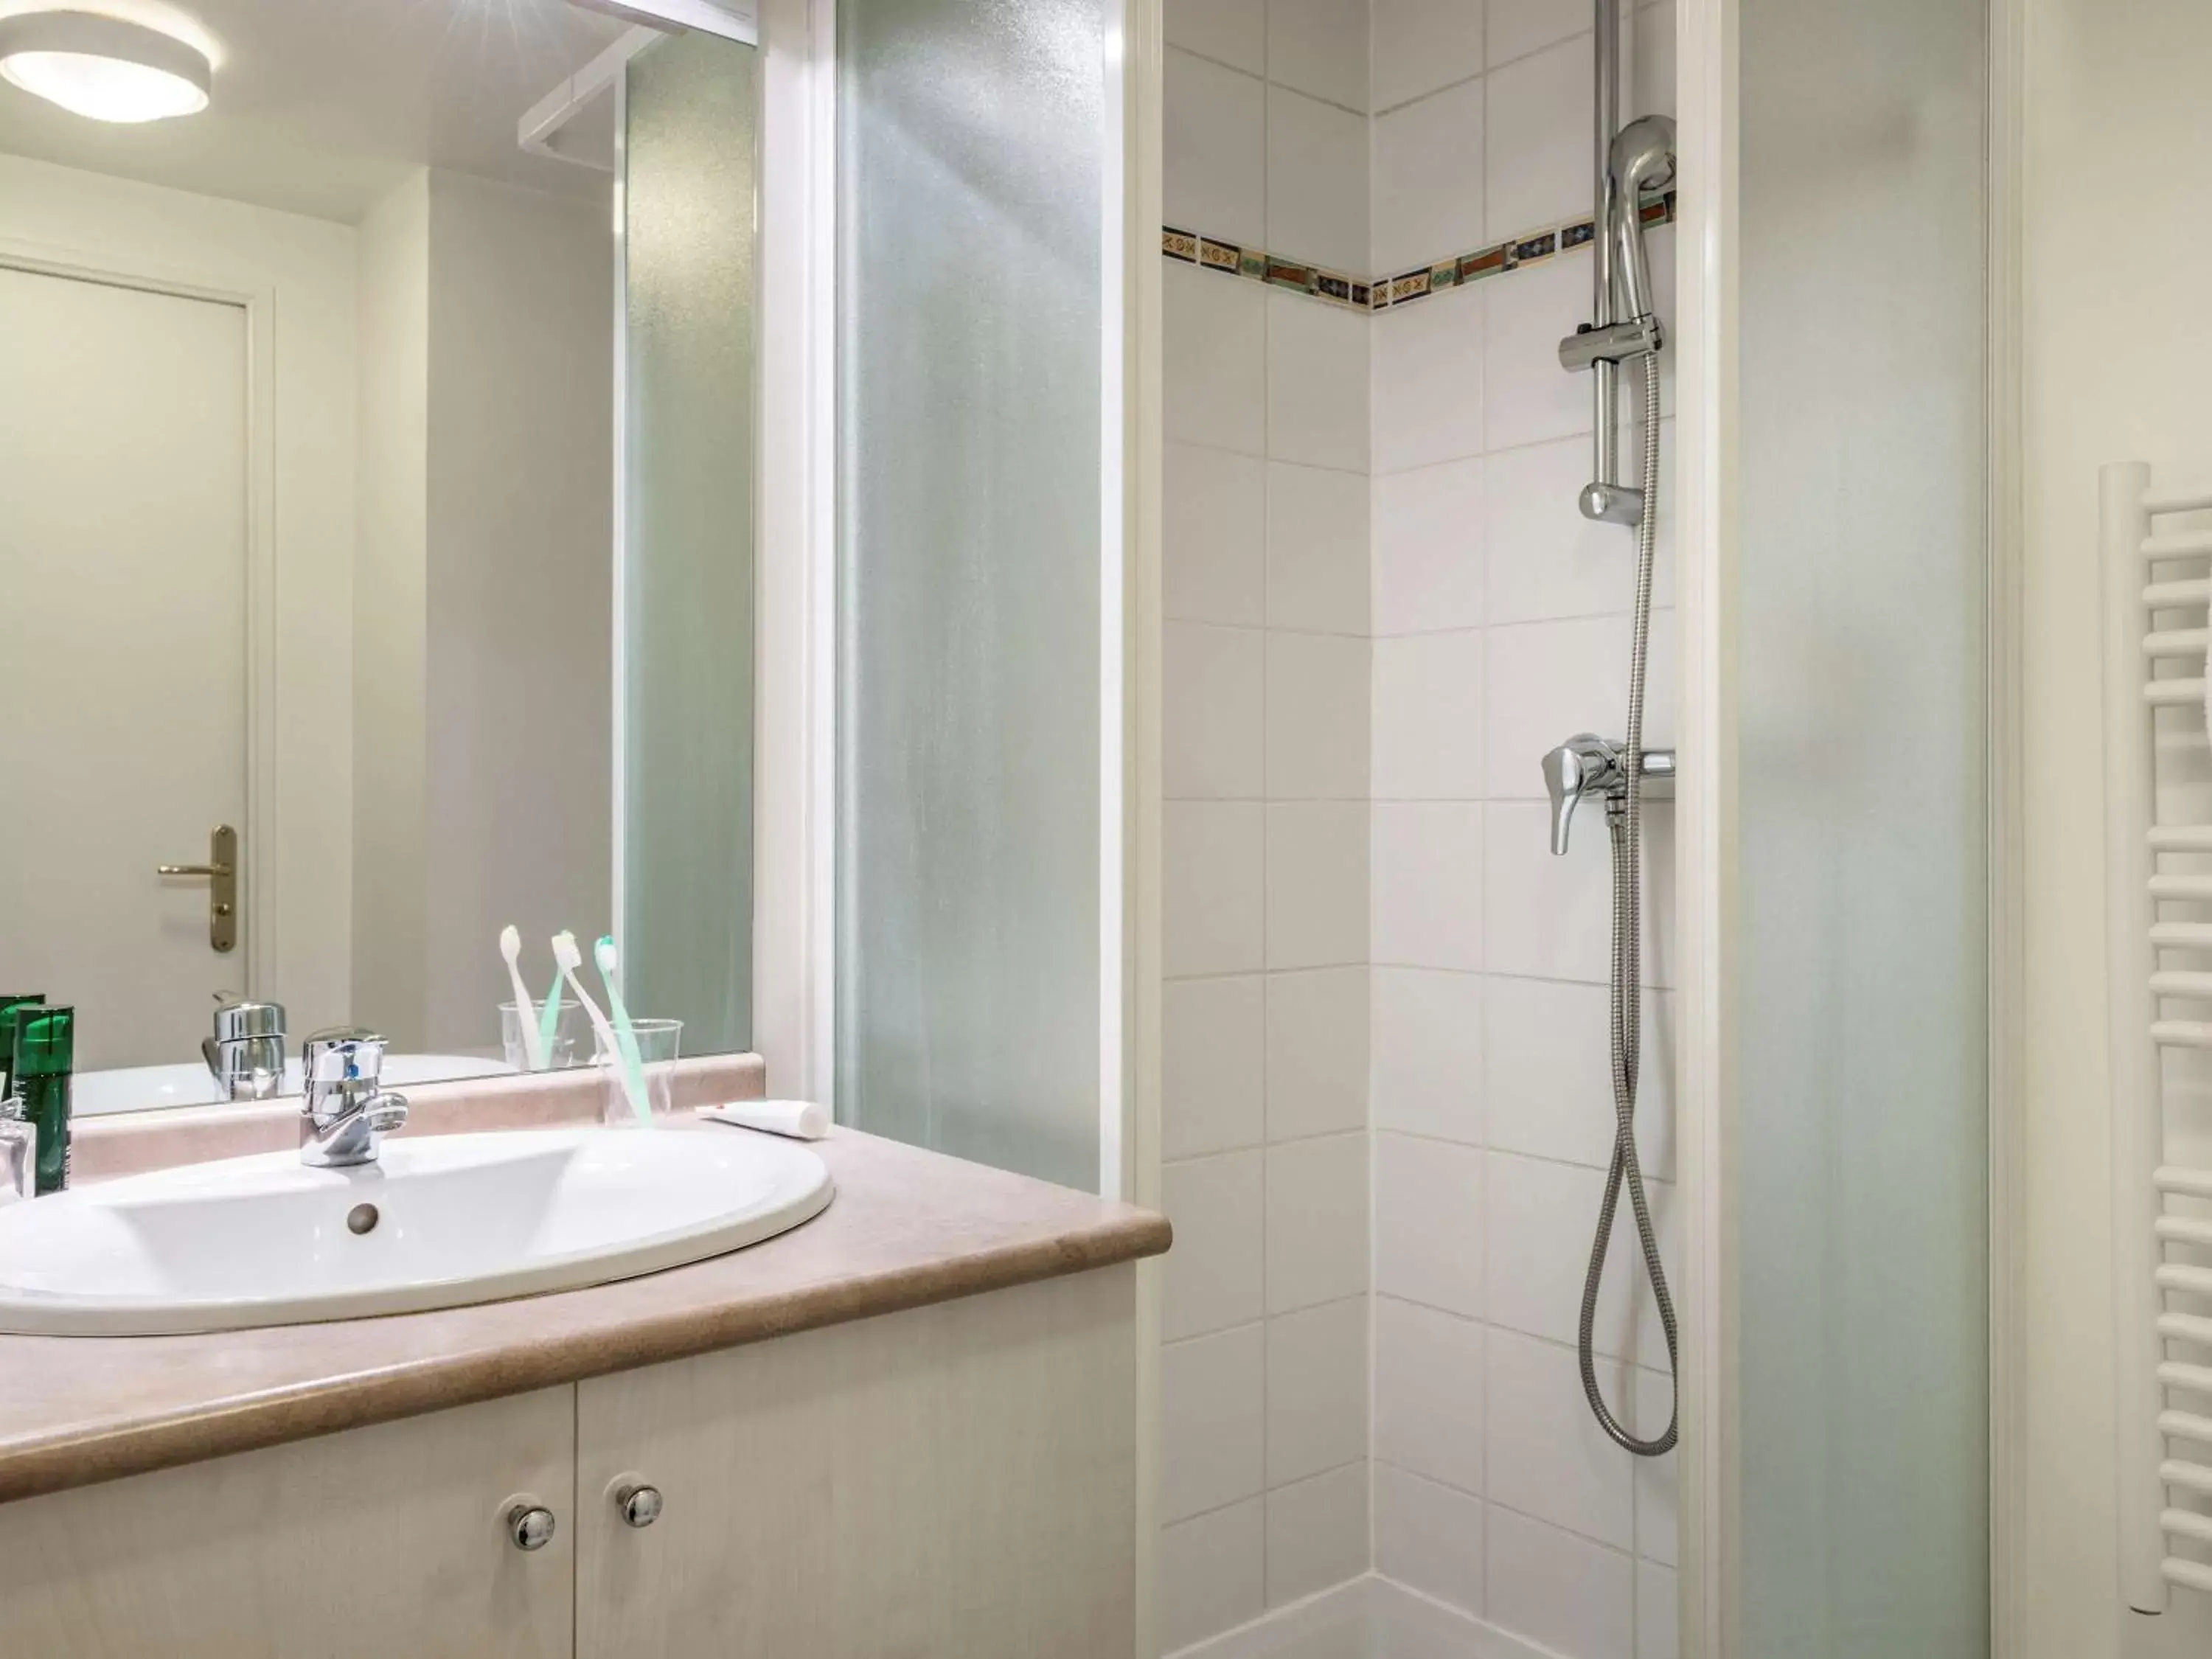 Photo of the whole room, Bathroom in Aparthotel Adagio Access Paris Porte De Charenton